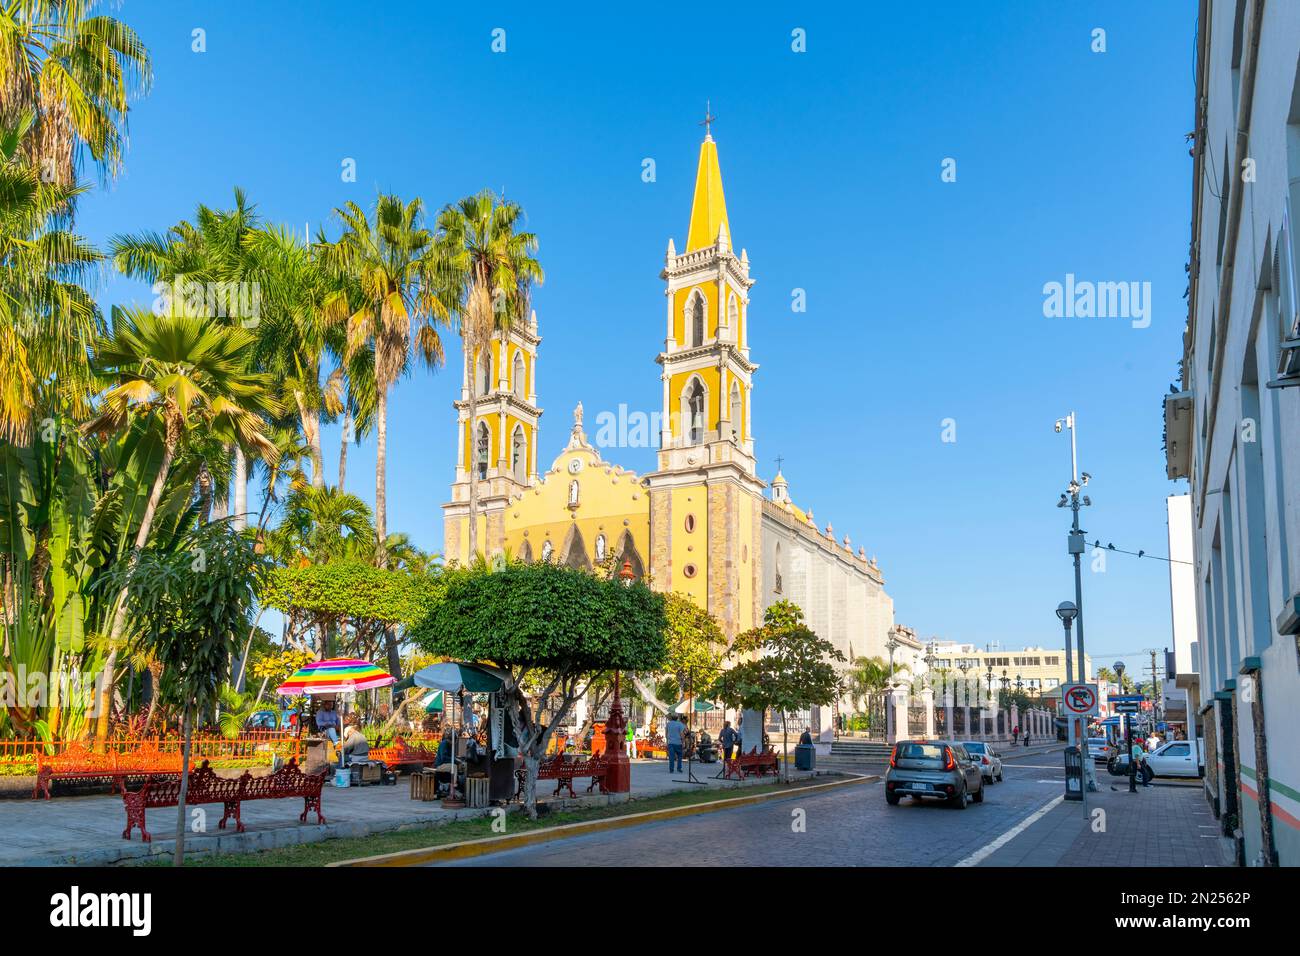 La storica cattedrale di Mazatlán, o basilica cattedrale dell'Immacolata Concezione in Plaza Republica Square a Mazatlan, Messico. Foto Stock